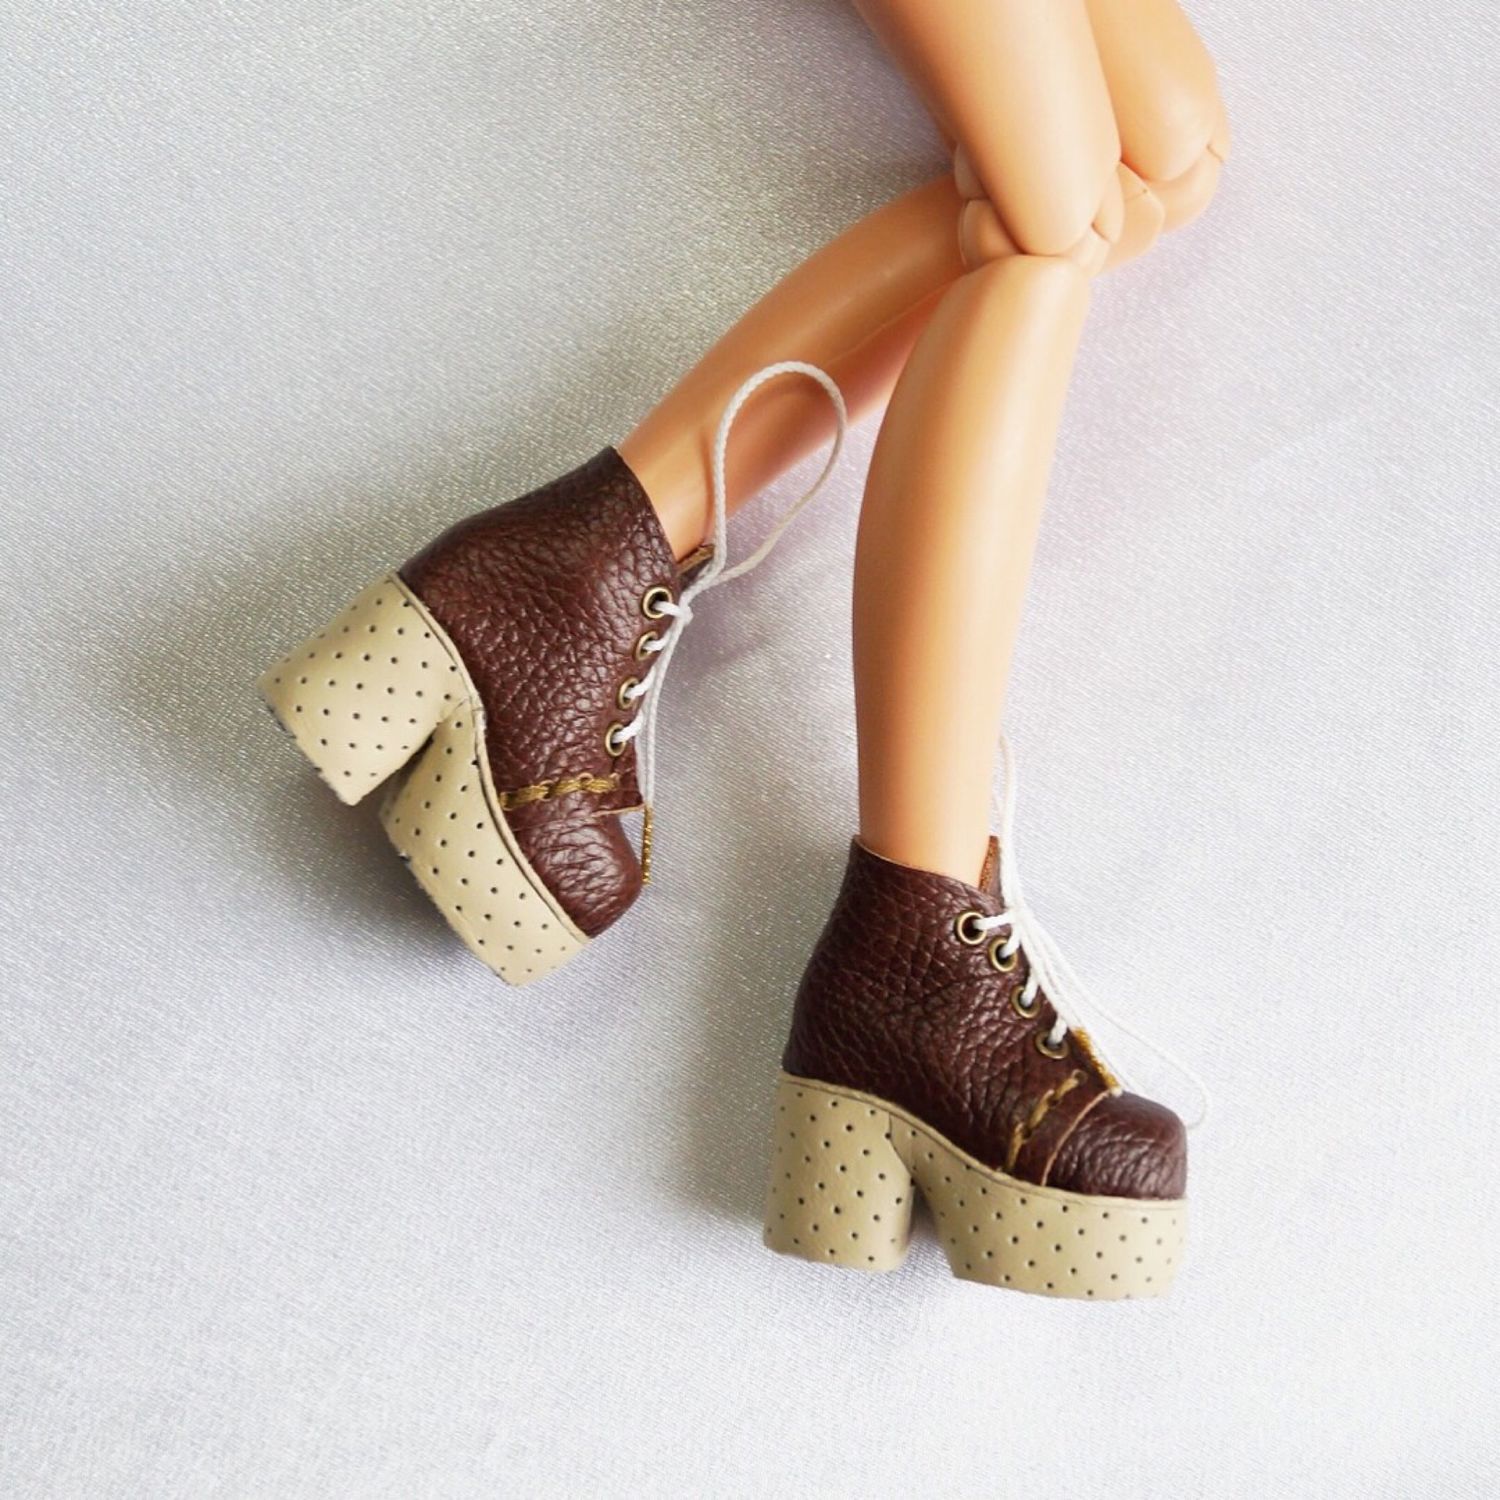 Обувь куклам своими руками